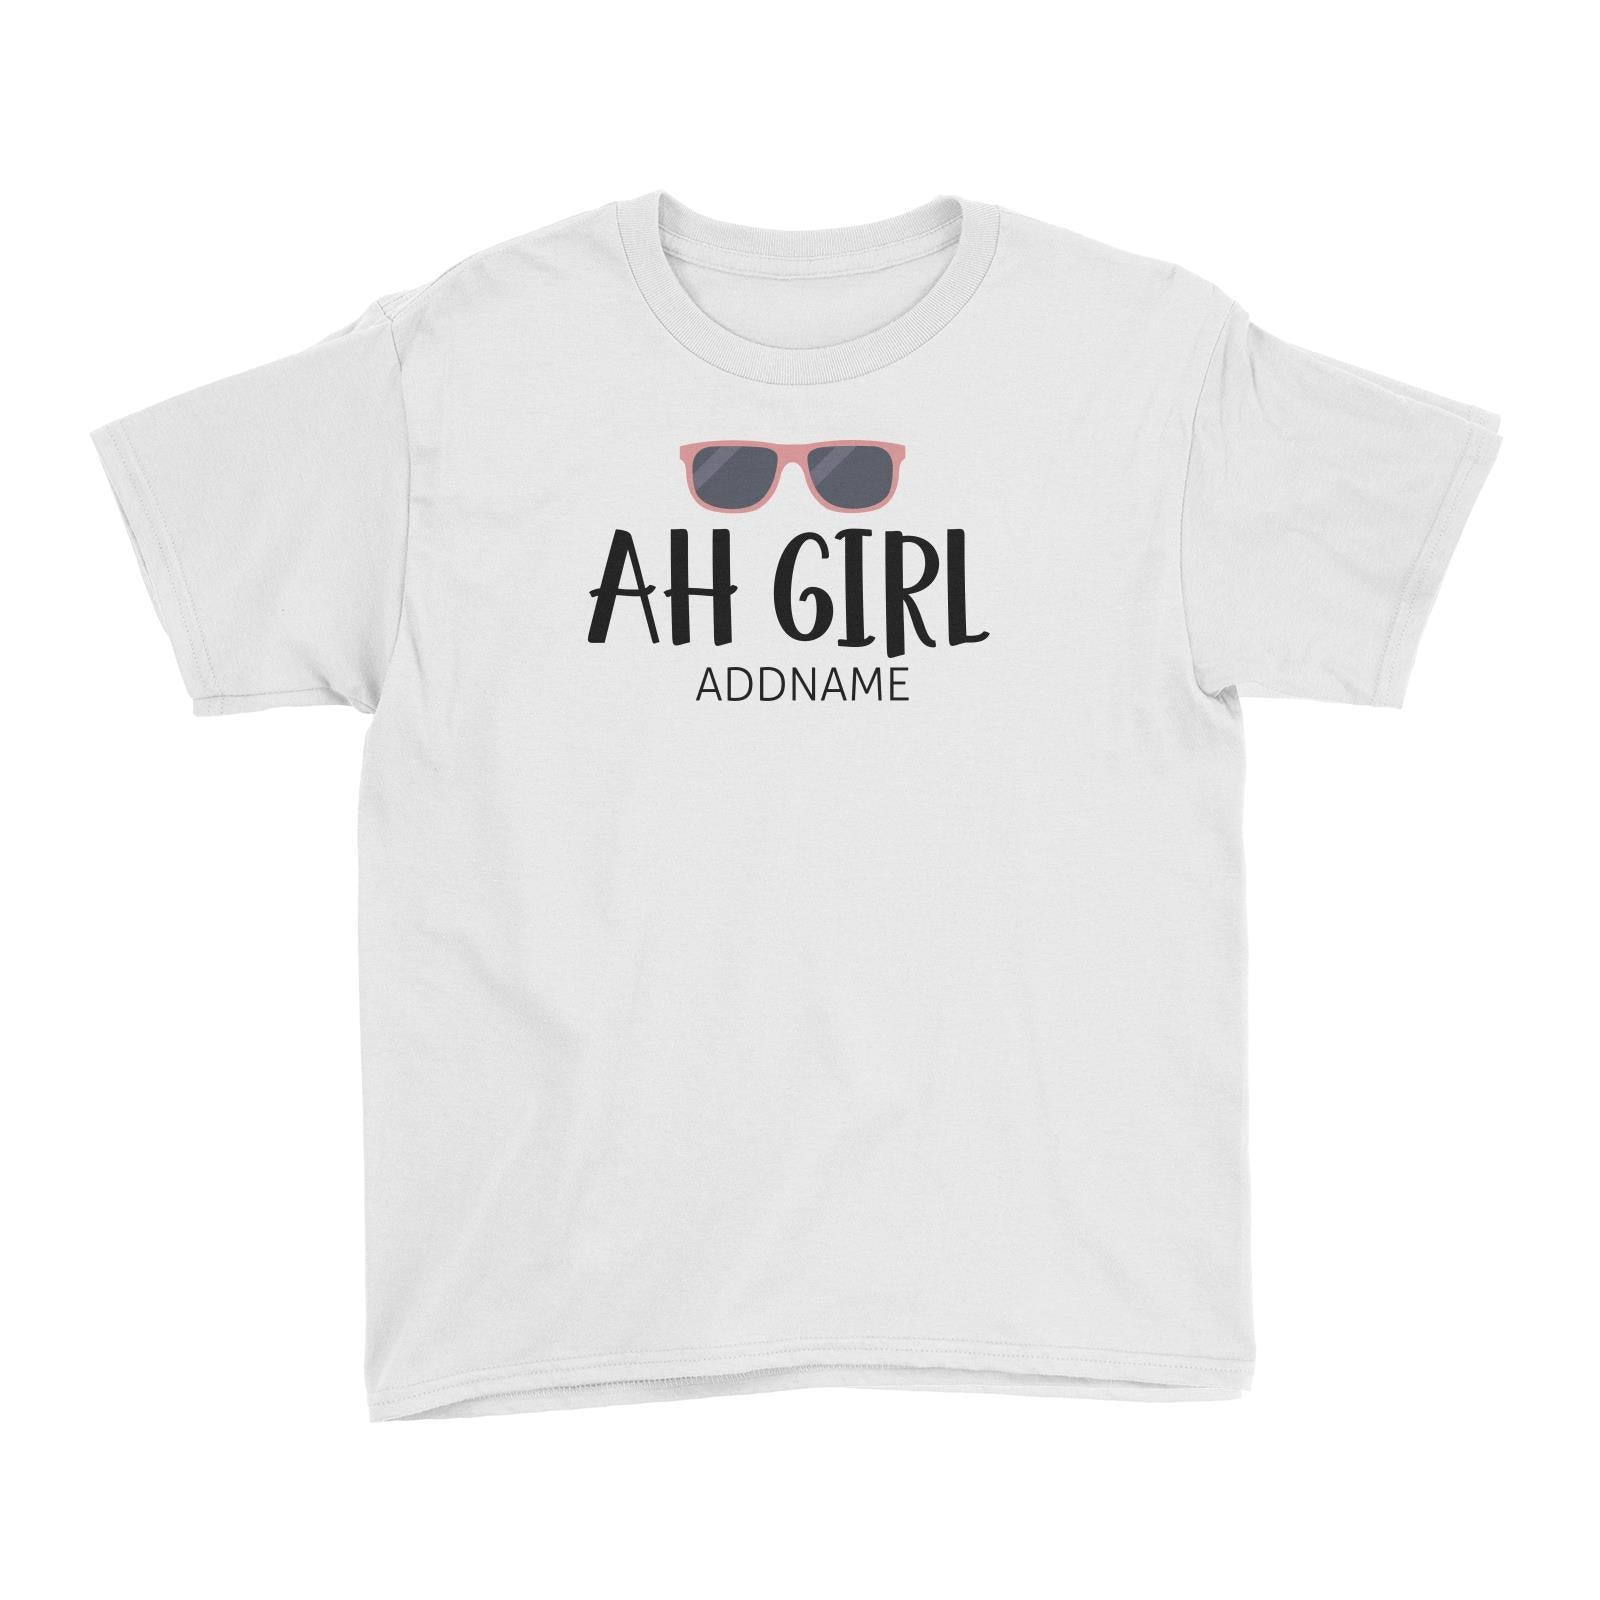 Ah Girl with Sunnies Kid's T-Shirt